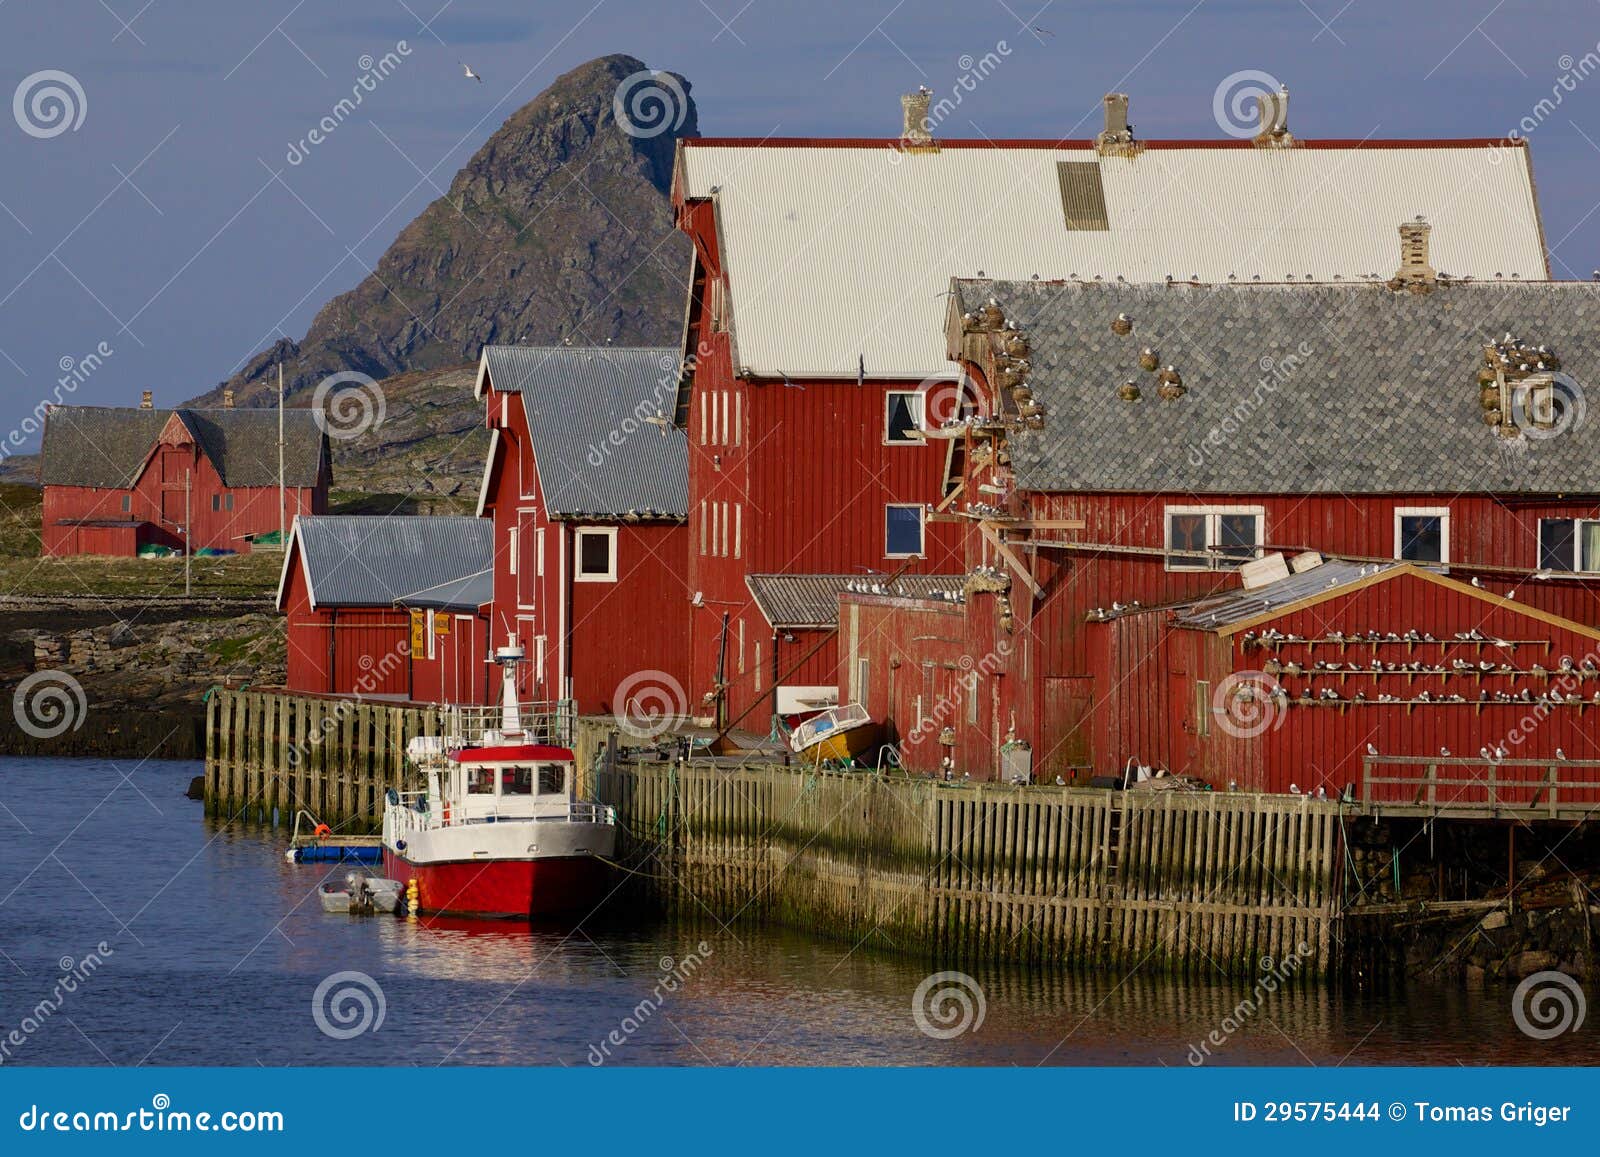 Norwegian fishing harbor